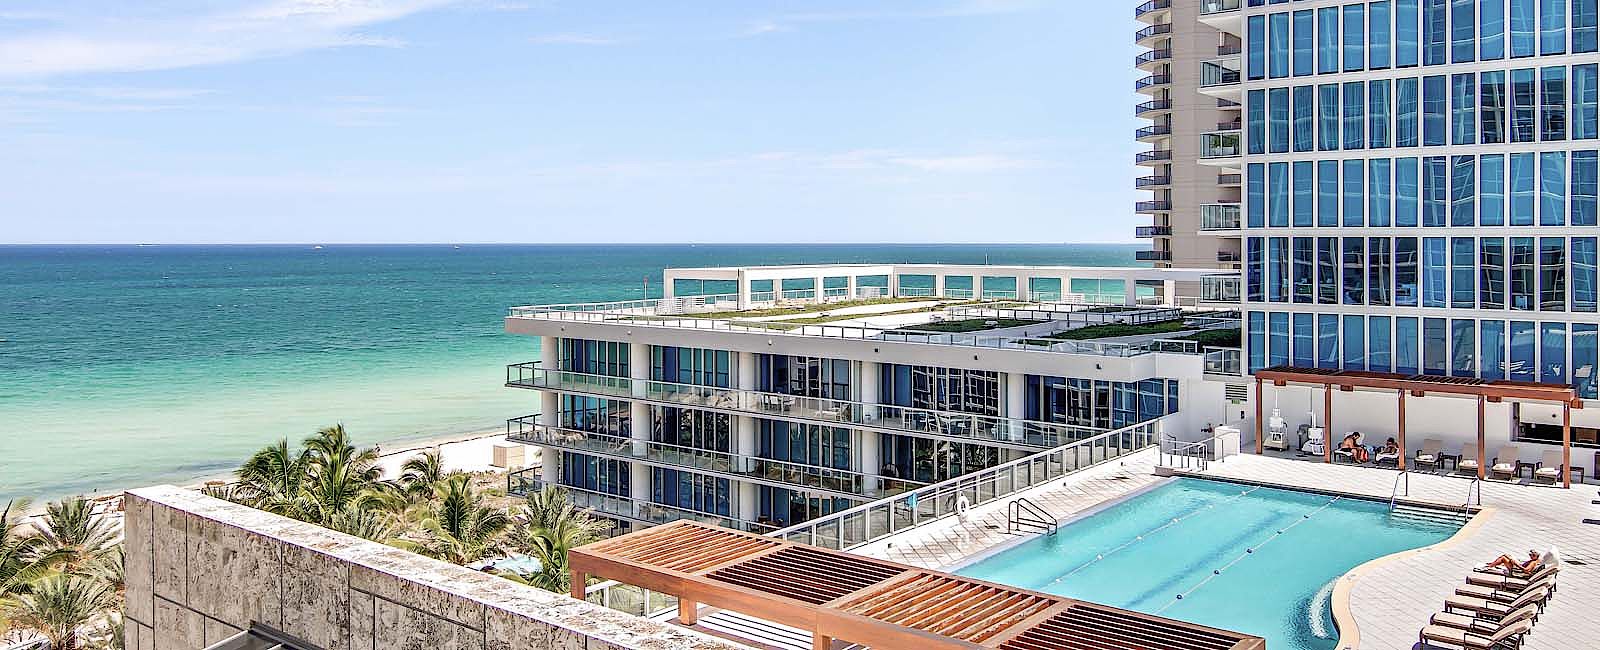 HOTELTEST
 Carillon Miami Beach 
 Ocean View 